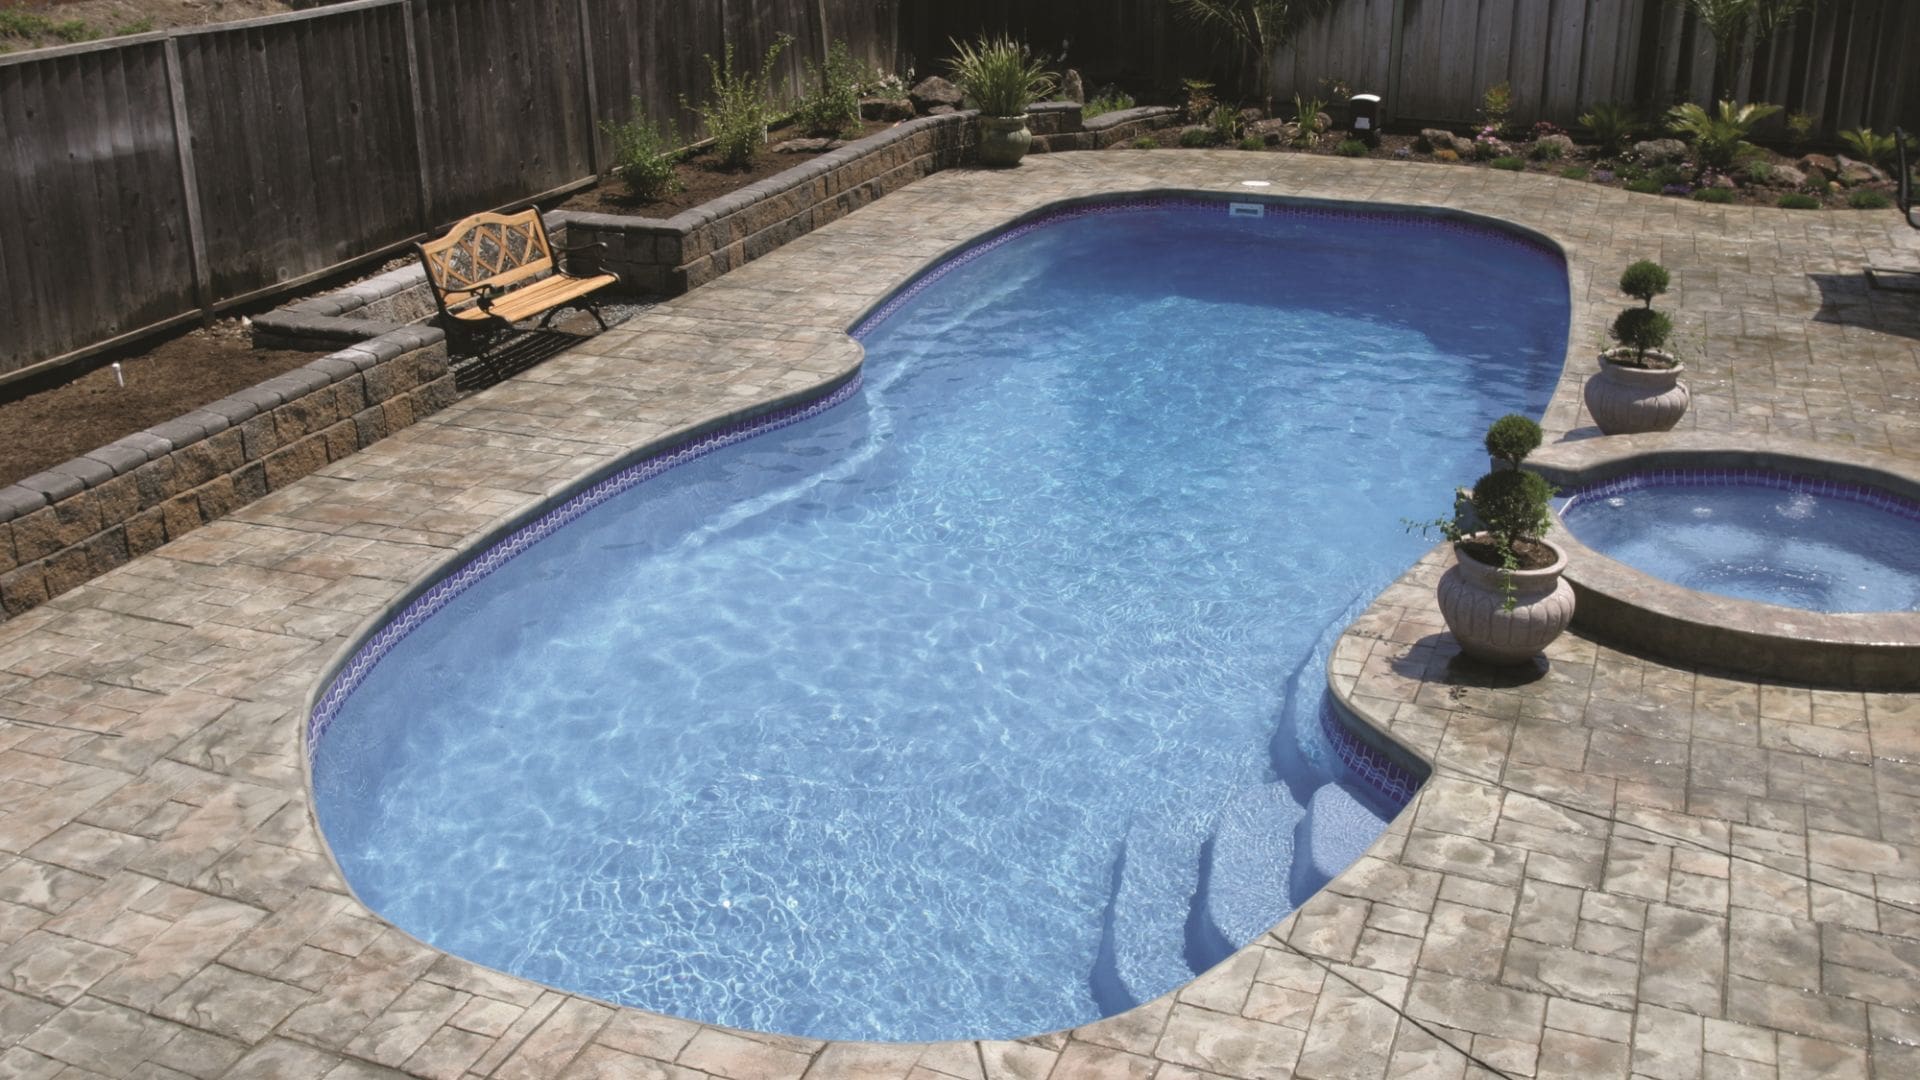 A freeform fiberglass pool